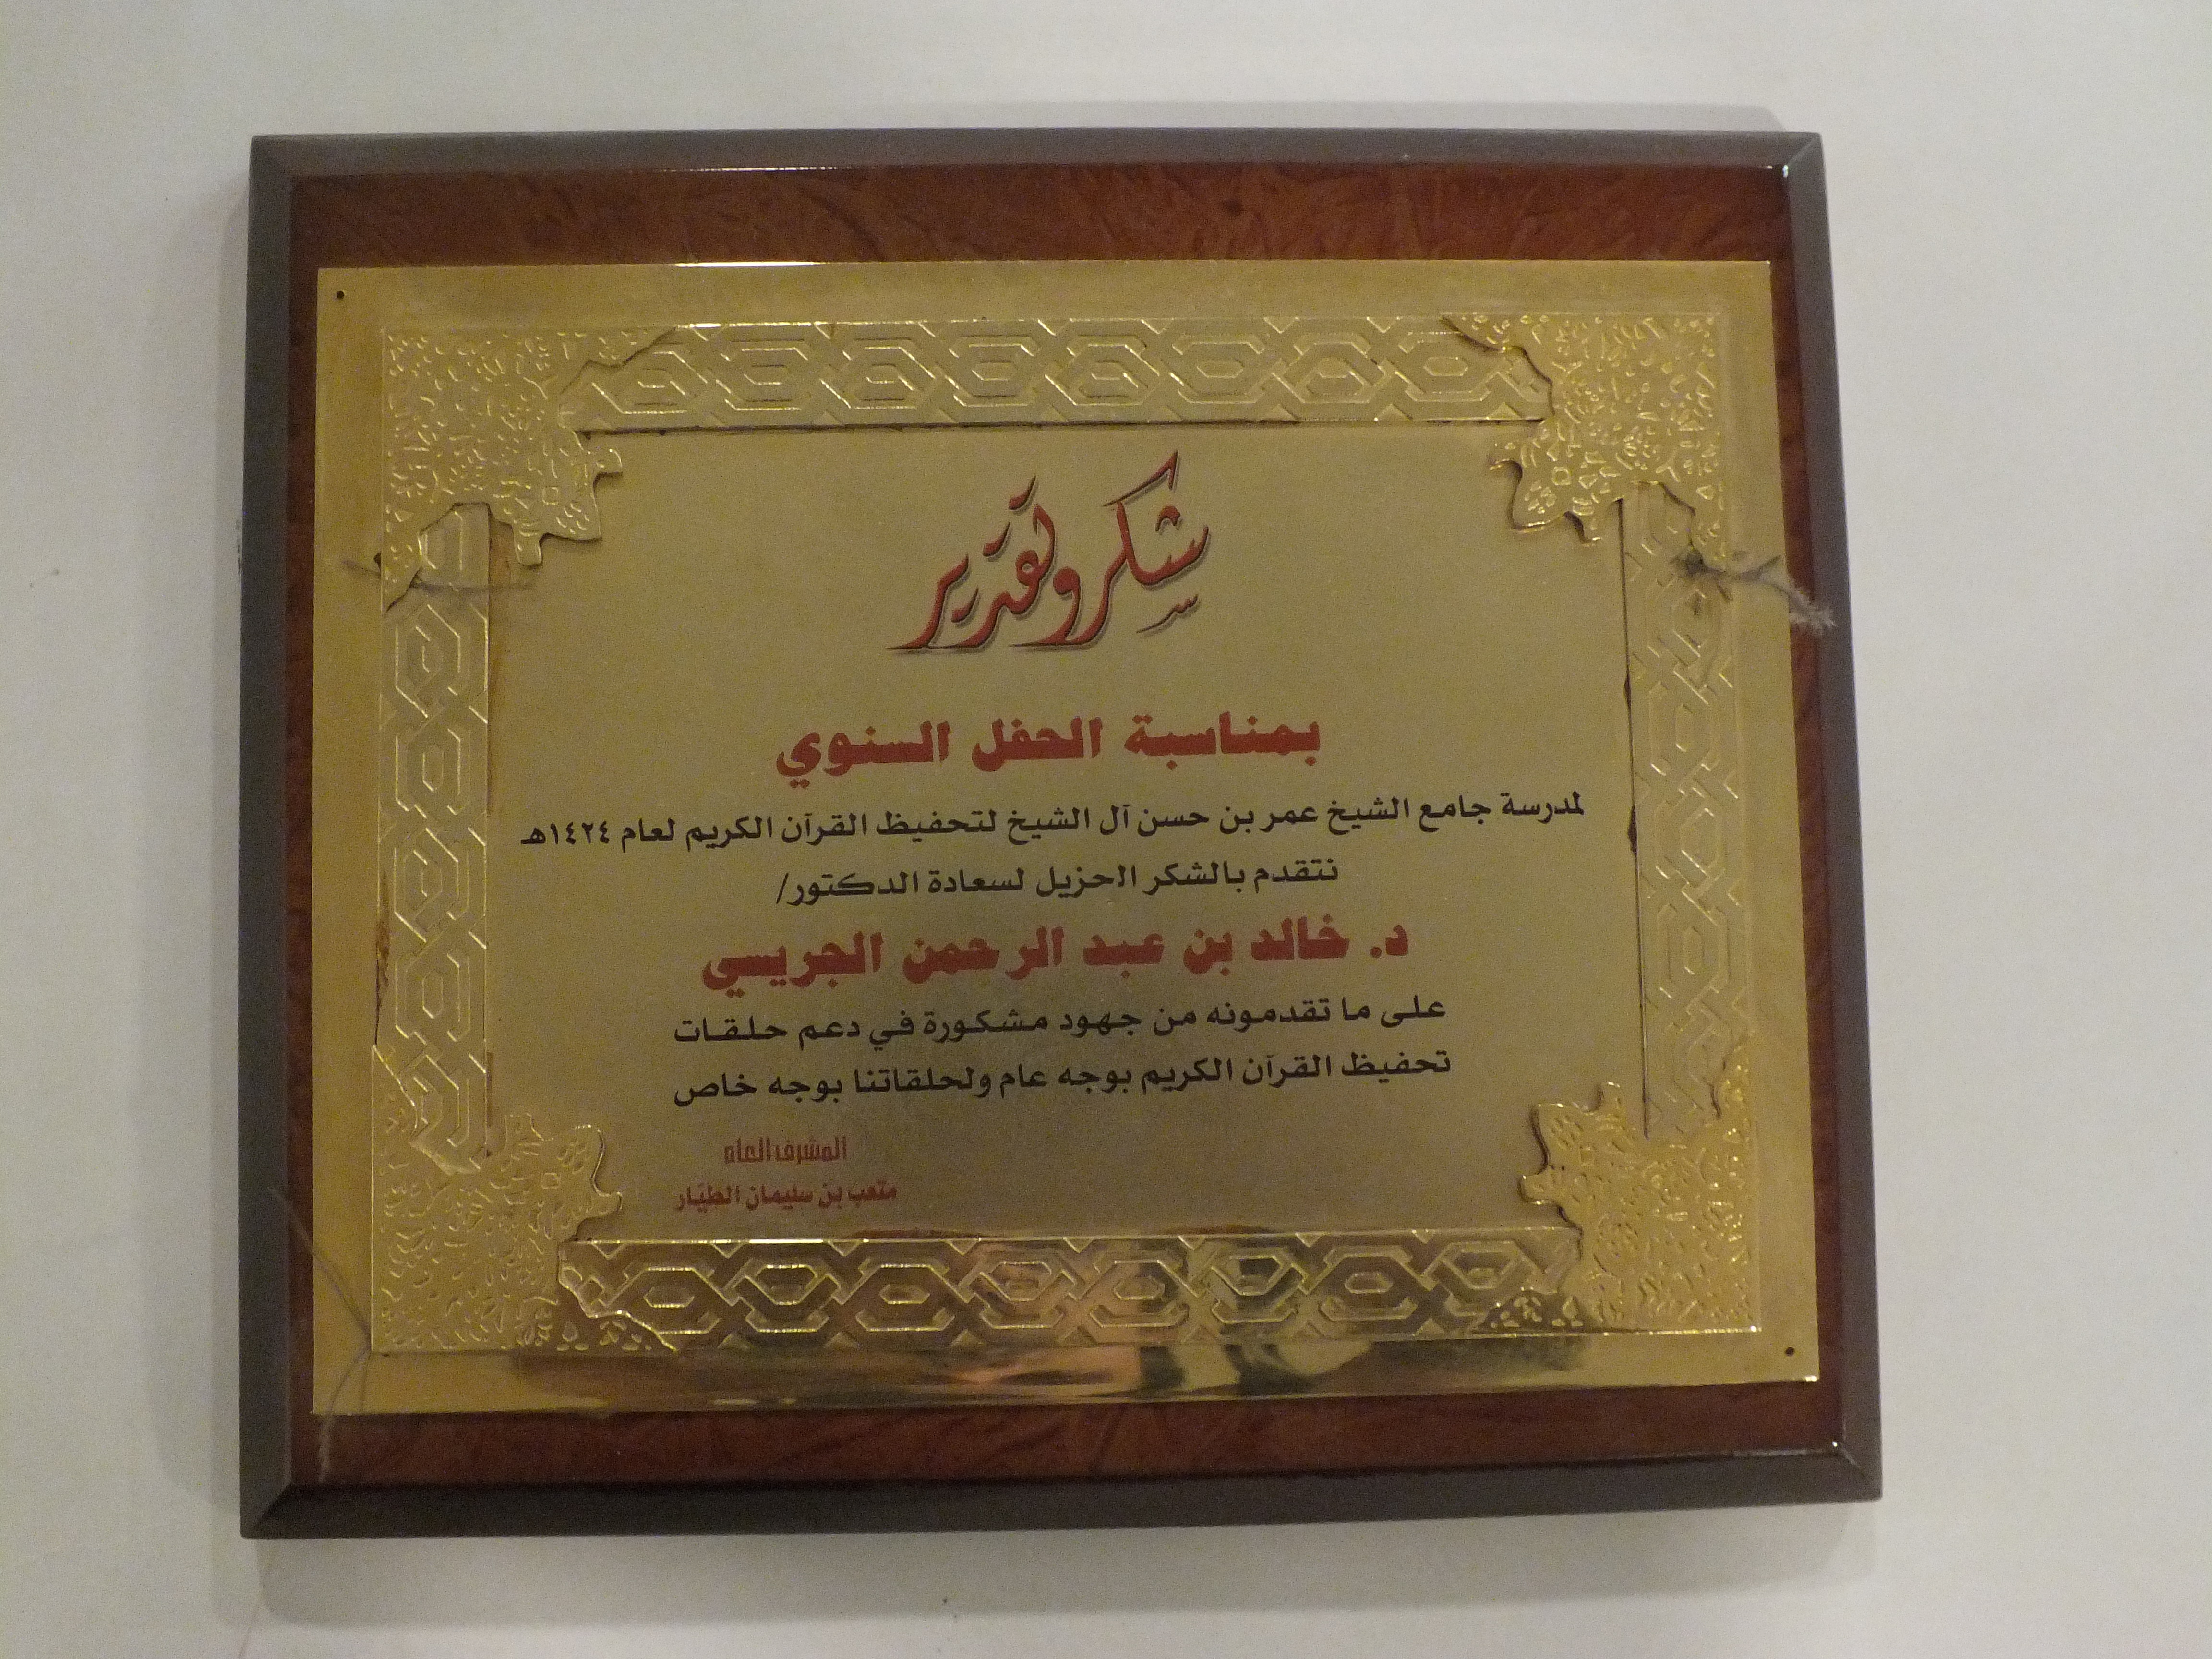 درع من جامع الشيخ عمر حسن آل الشيخ لتحفيظ القرآن الكريم (1424هـ)